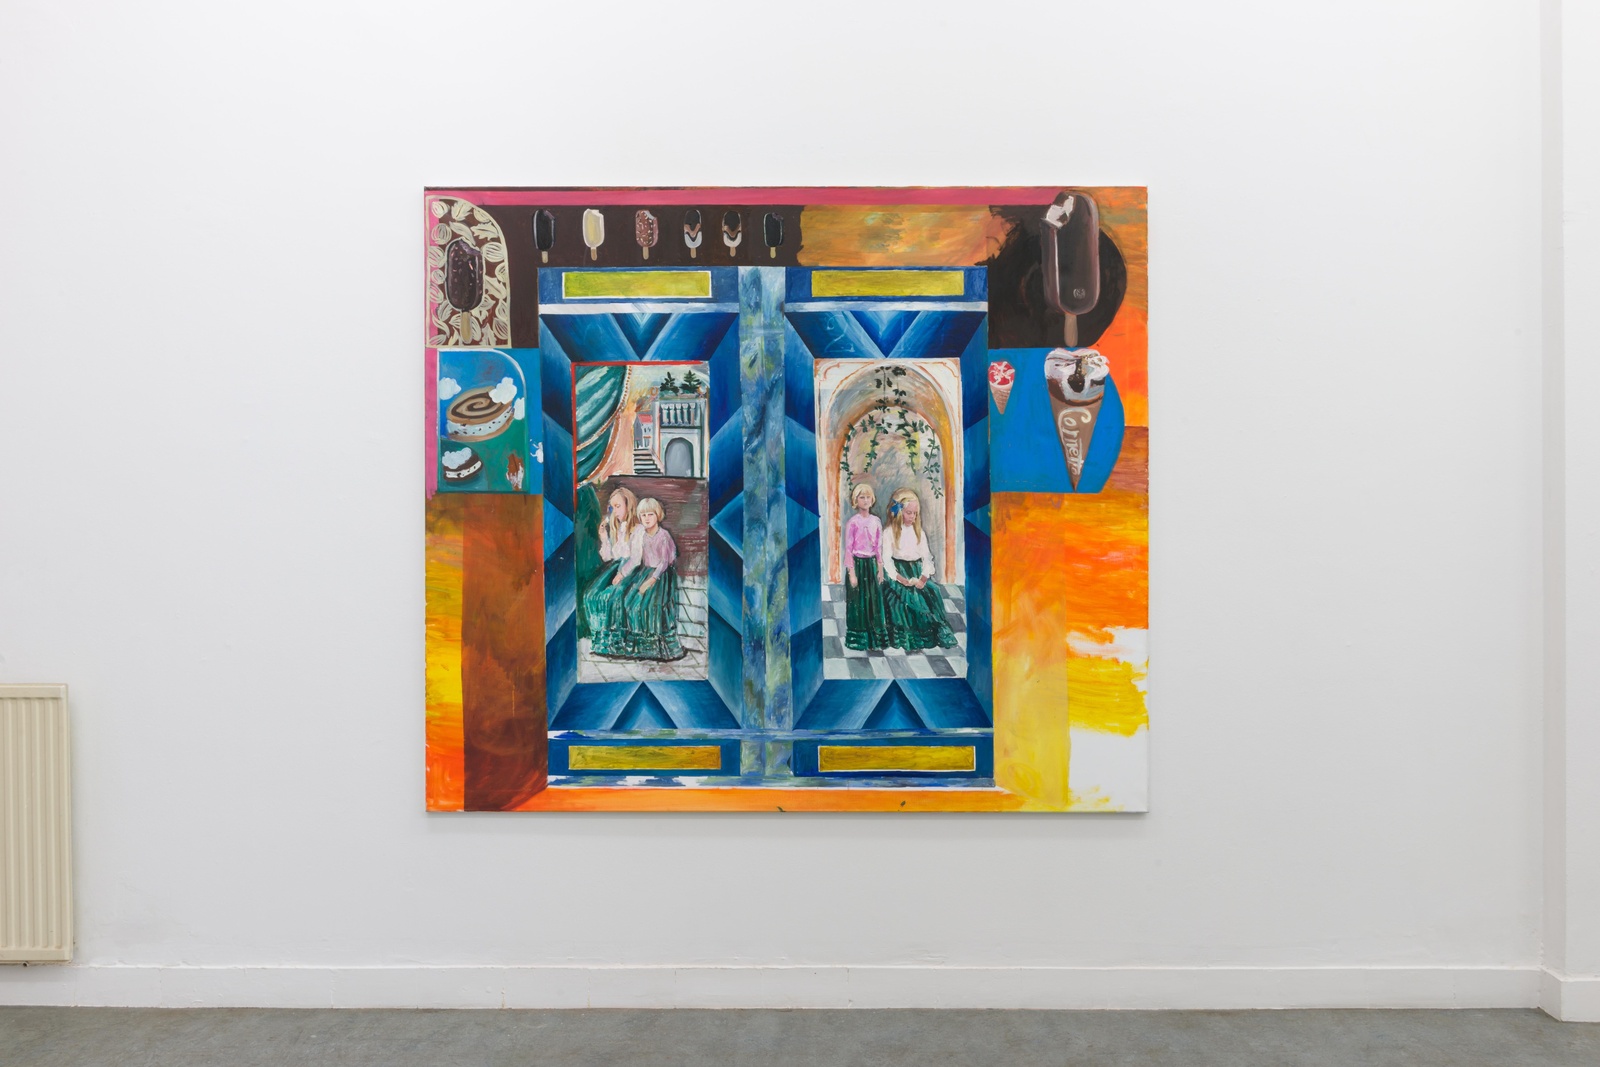 Untitled (Schwestern im Schrank), 2019-20oil on canvas180 x 210 cm | 70 3/4 x 82 2/3 in